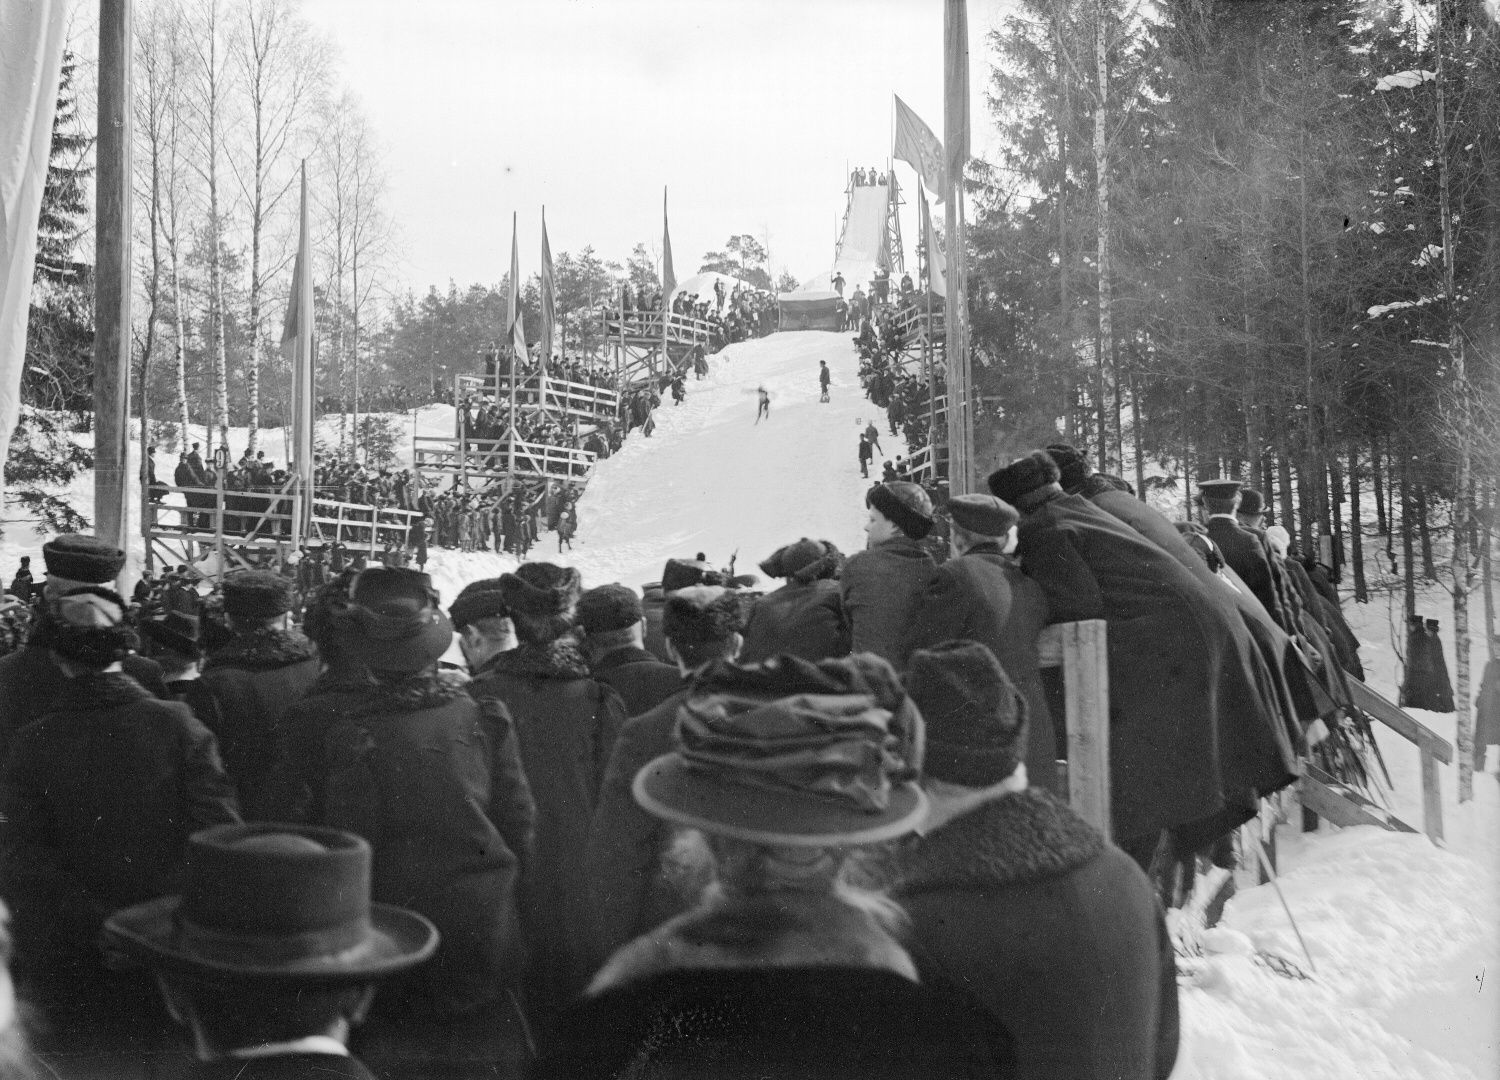 Skoky na lyžích - historie